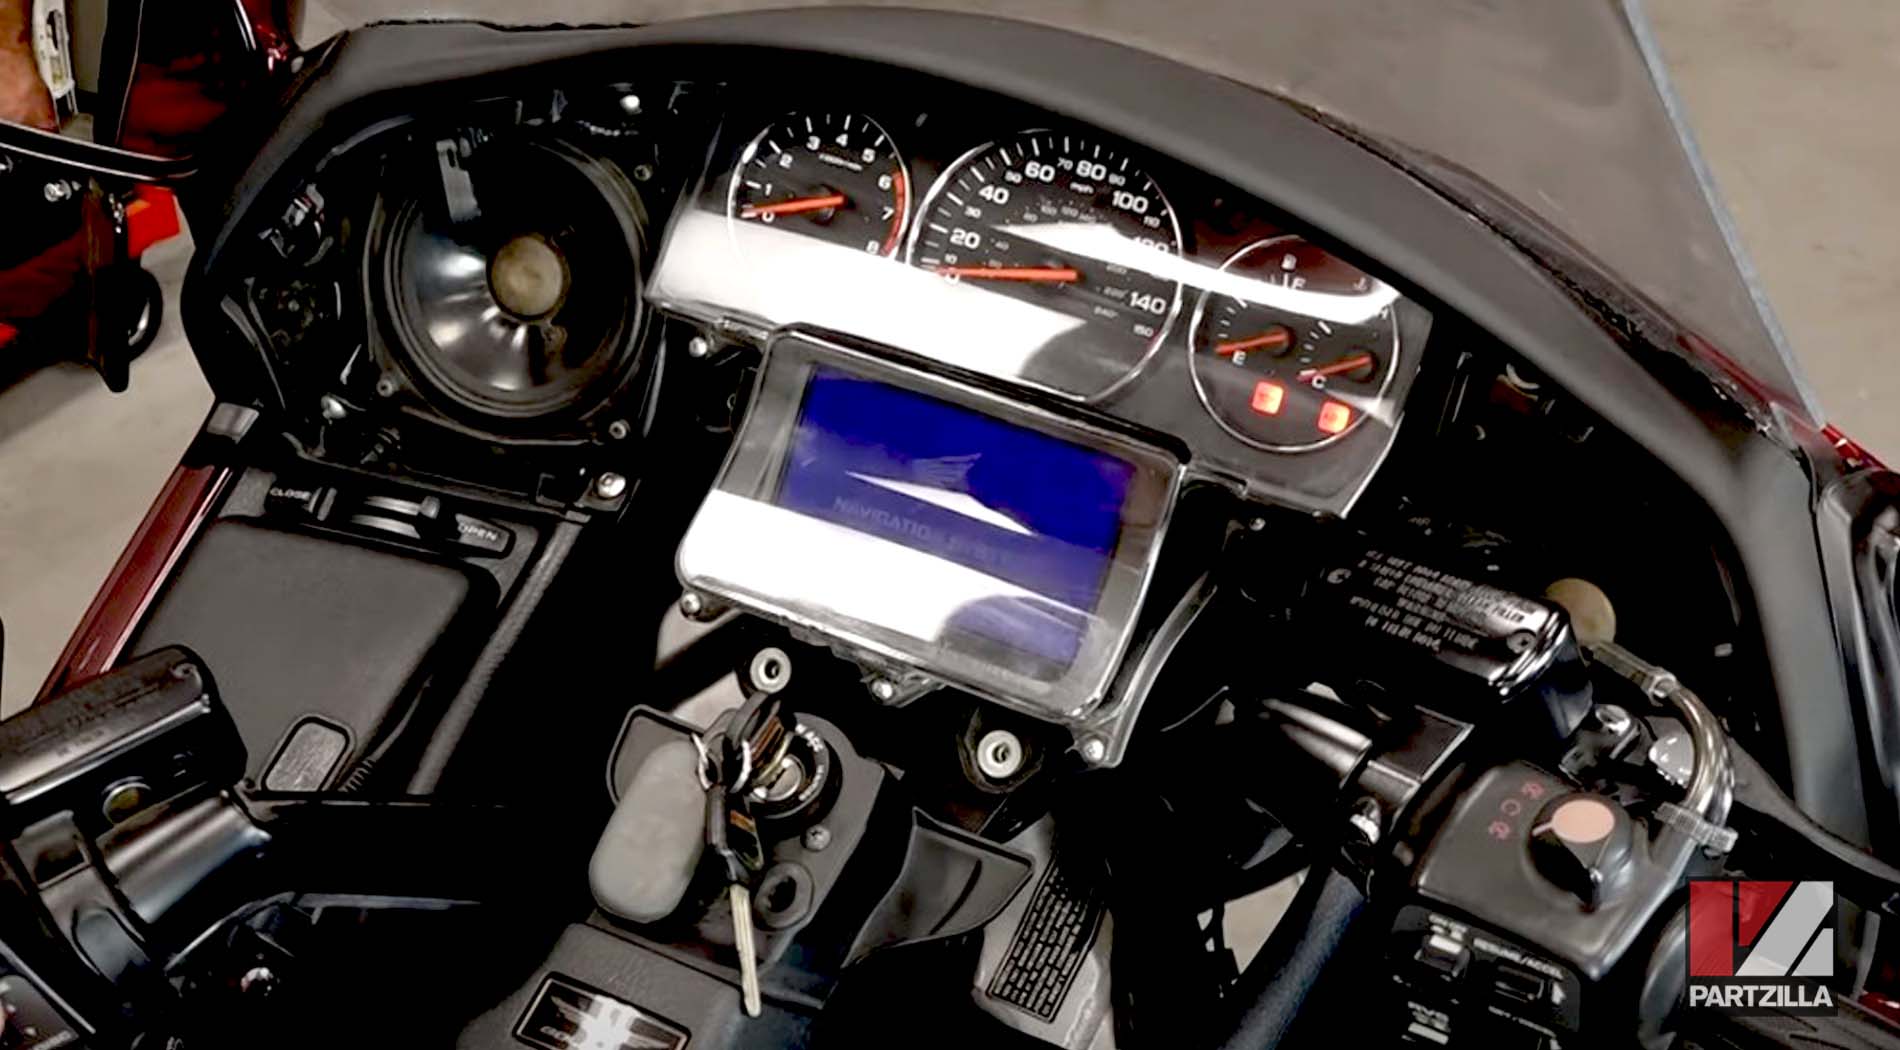 Honda GL1800 steering stem bearing change meter assembly